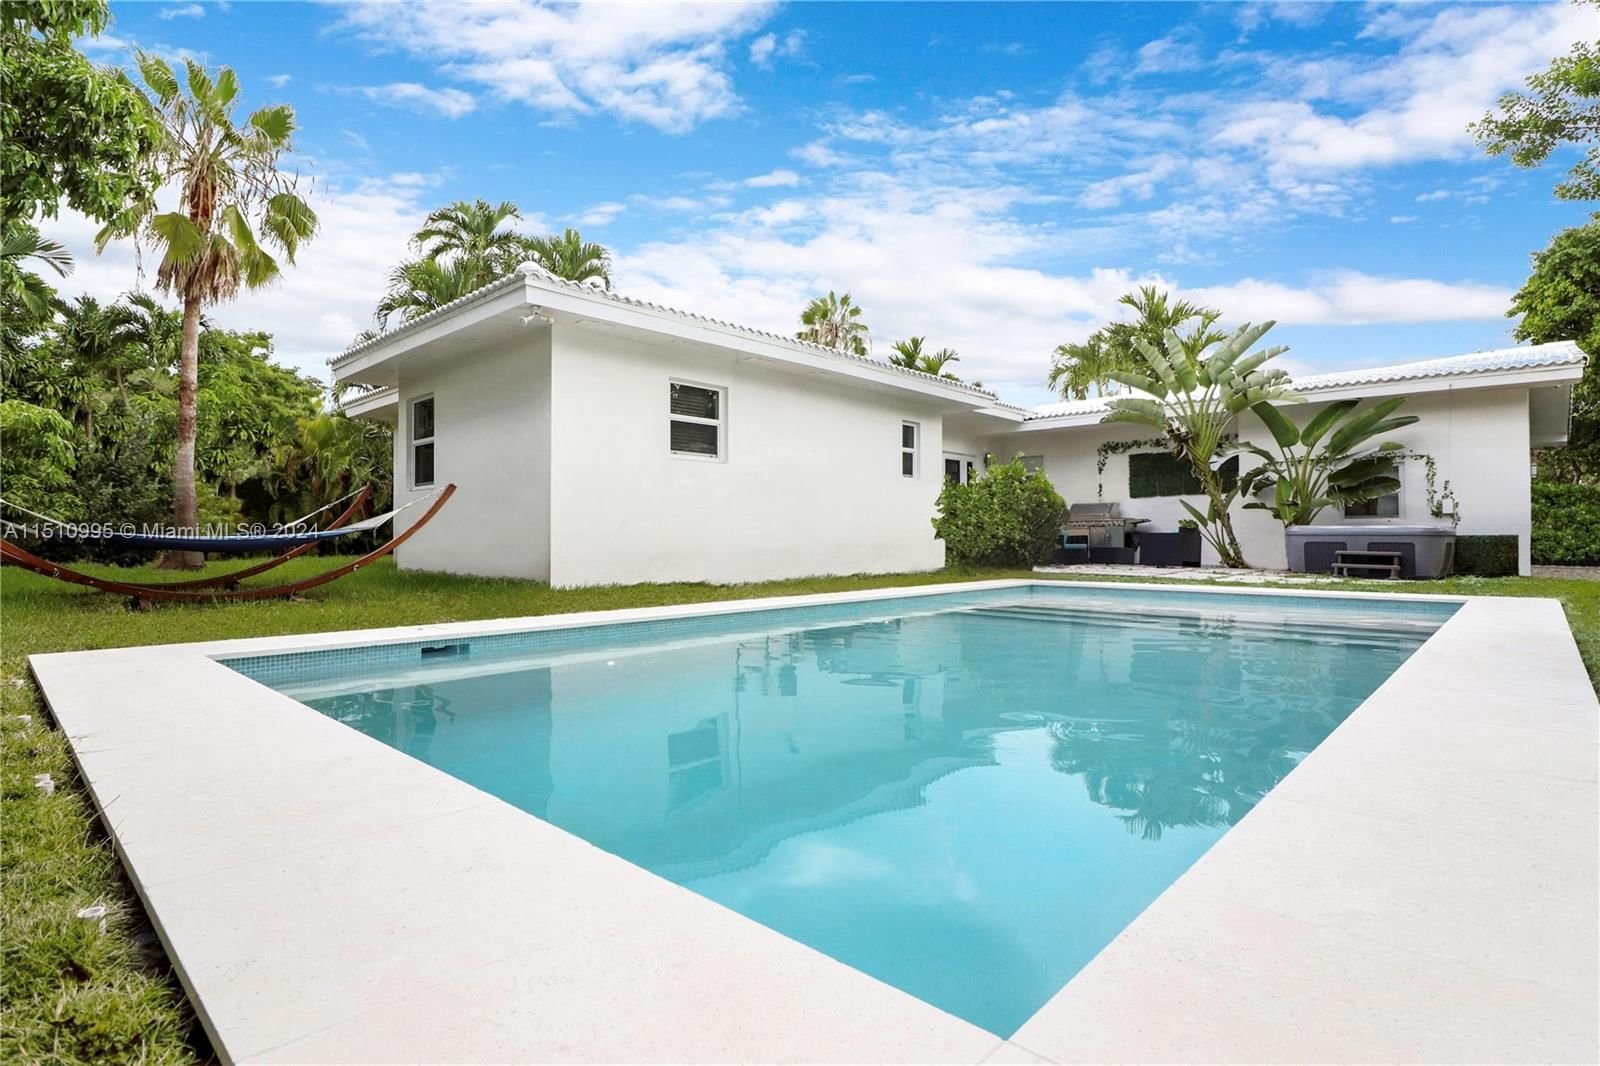 Real estate property located at 787 87th St, Miami-Dade County, NORTH SHORE CREST, Miami, FL